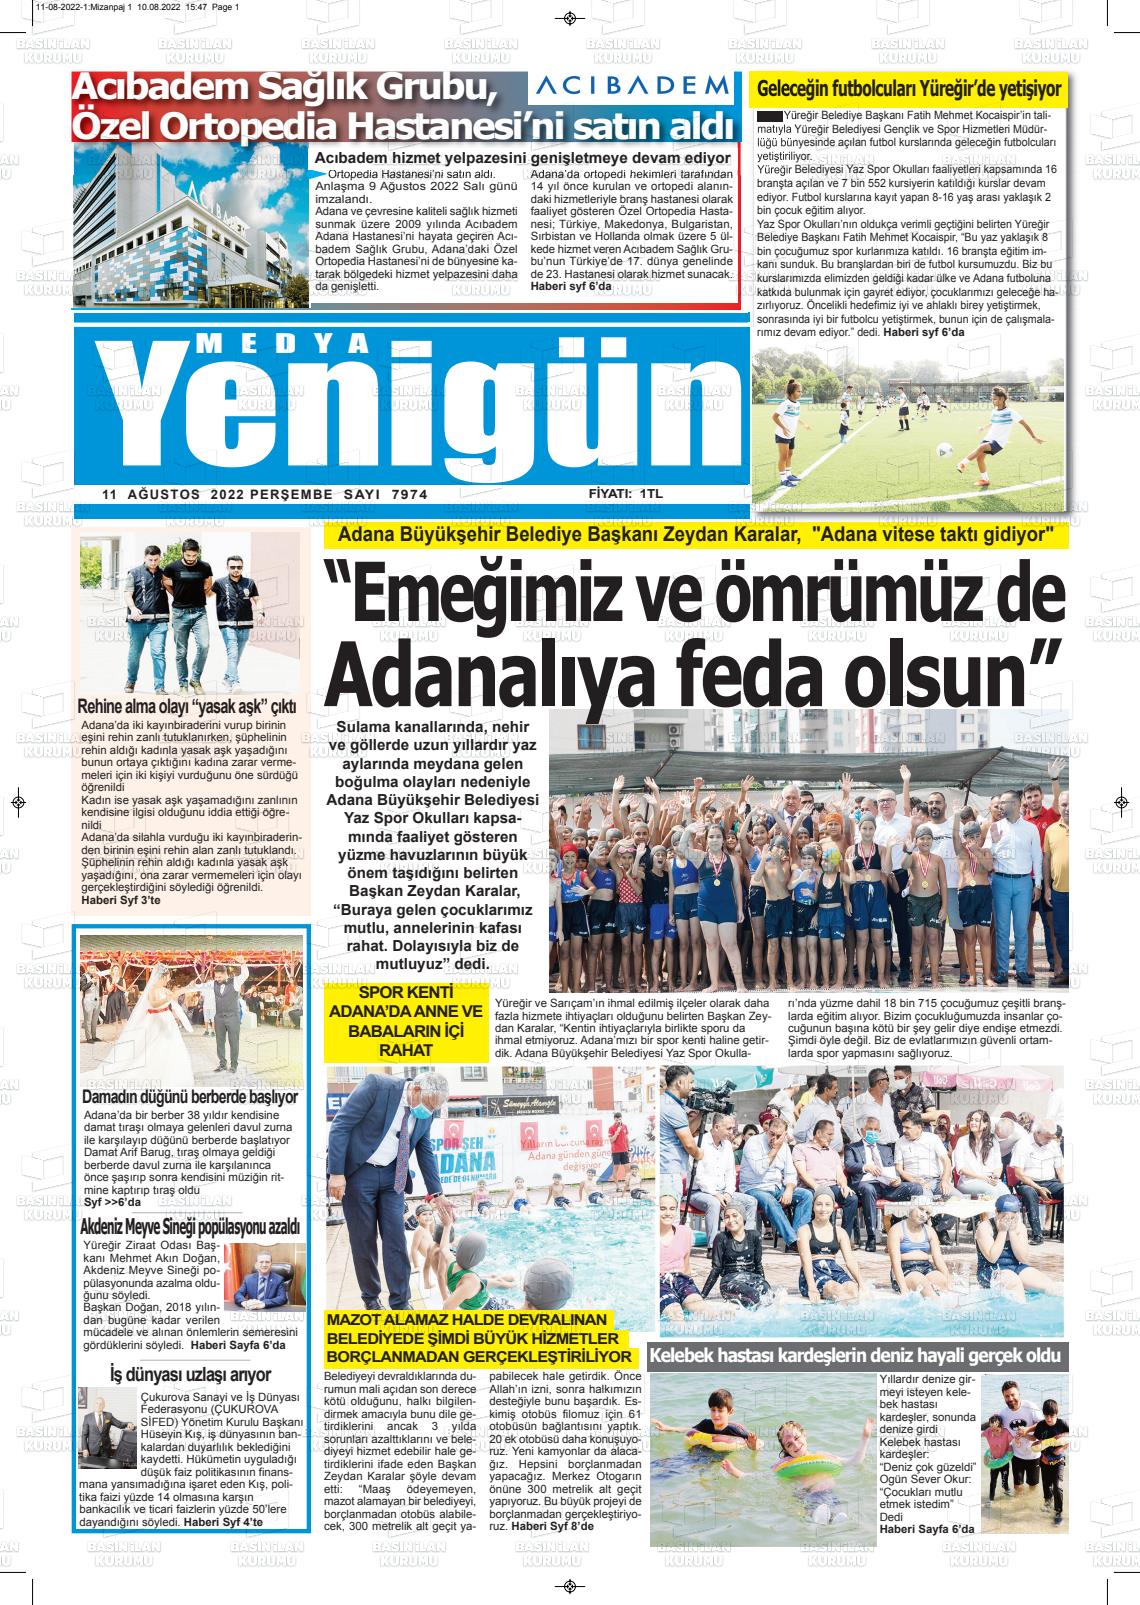 11 Ağustos 2022 Medya Yenigün Gazete Manşeti